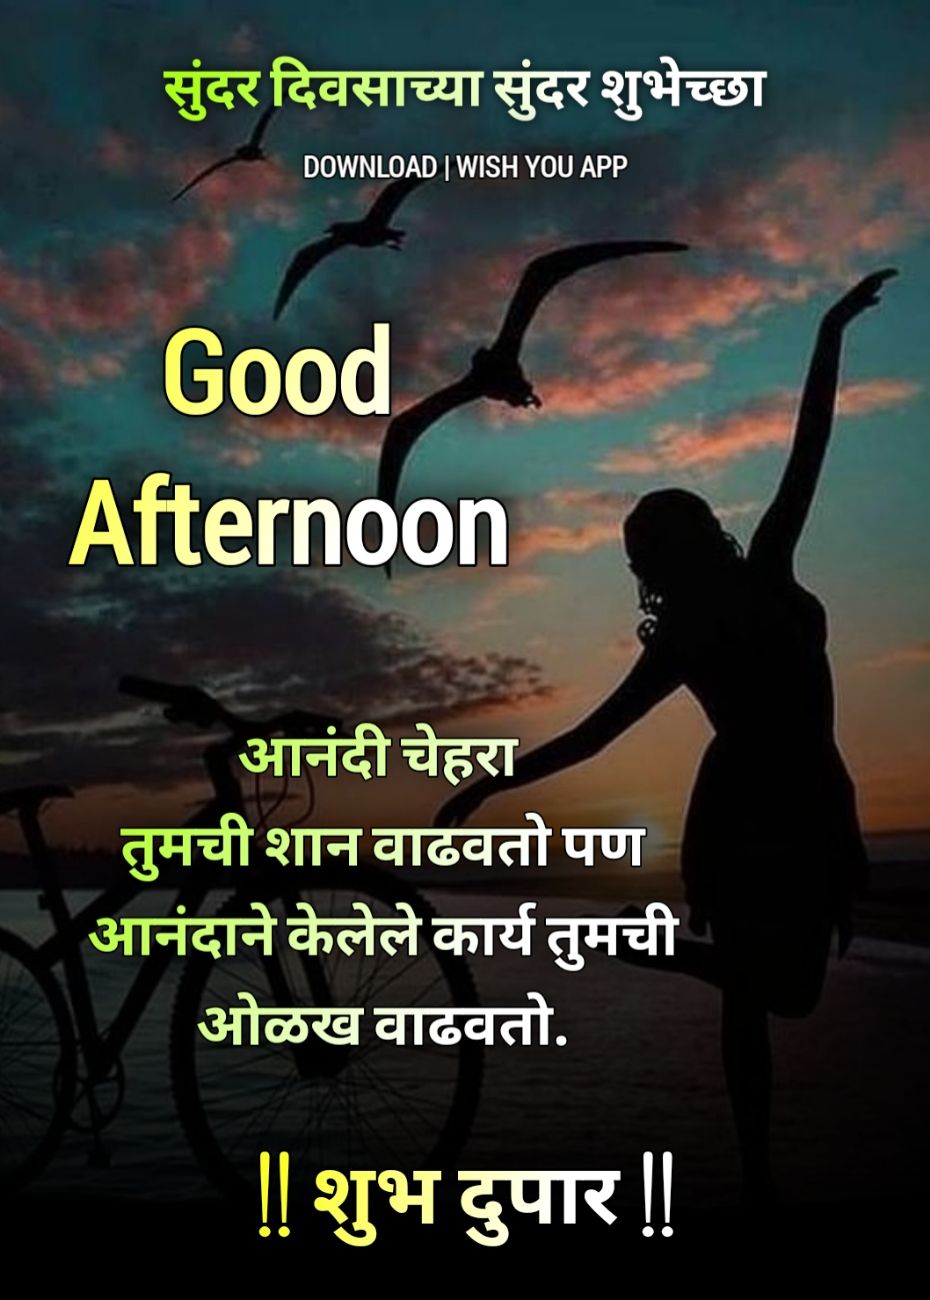 Shubh Dupar Marathi Message,Good Afternoon In Marathi